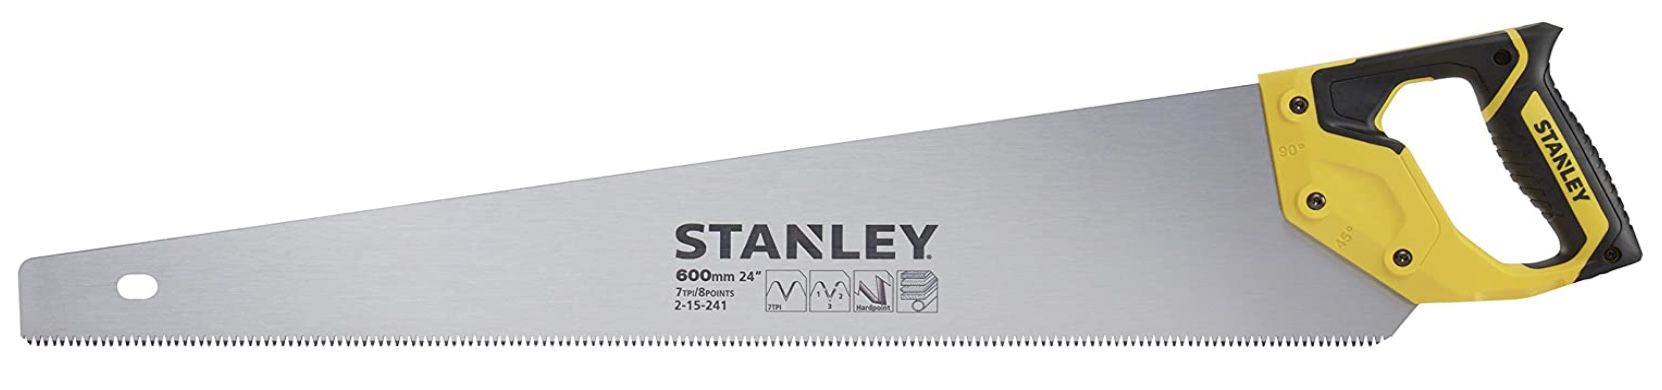 Stanley Jet Cut HP Handsäge mit 600mm Länge für 26,73€ (statt 35€)